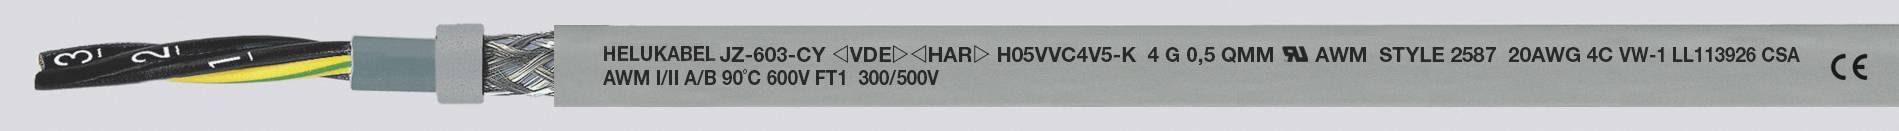 HELUKABEL JZ-603-CY Steuerleitung 4 G 2.50 mm² Grau 83765-1000 1000 m